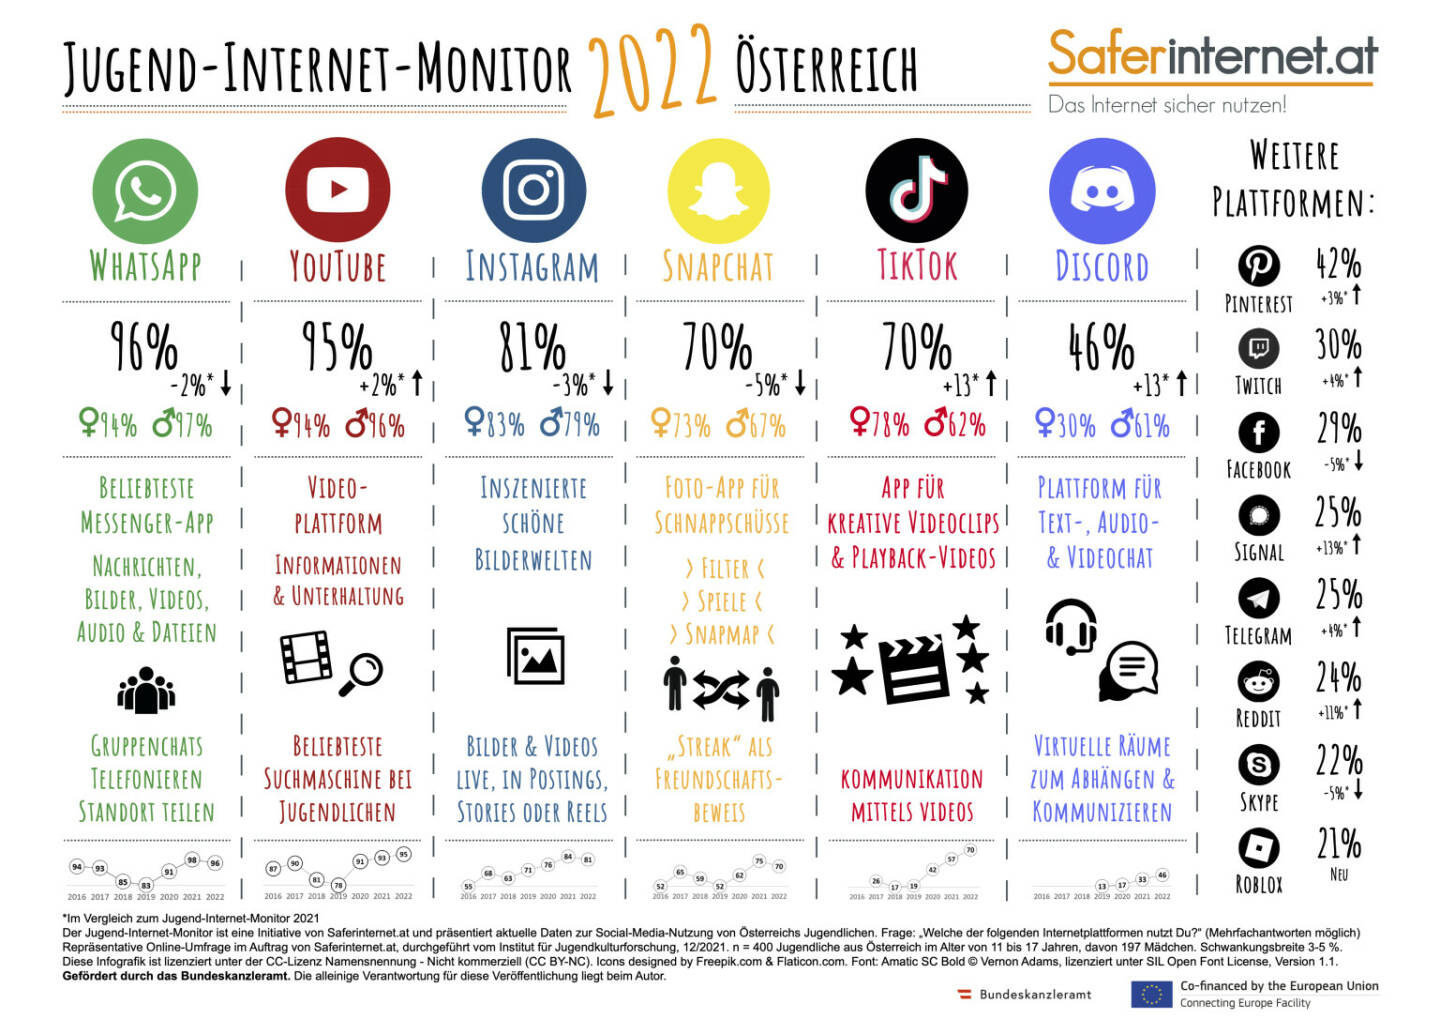 Saferinternet.at: Jugend-Internet-Monitor 2022: Das sind die beliebtesten Sozialen Netzwerke, Credit: Saferinternet